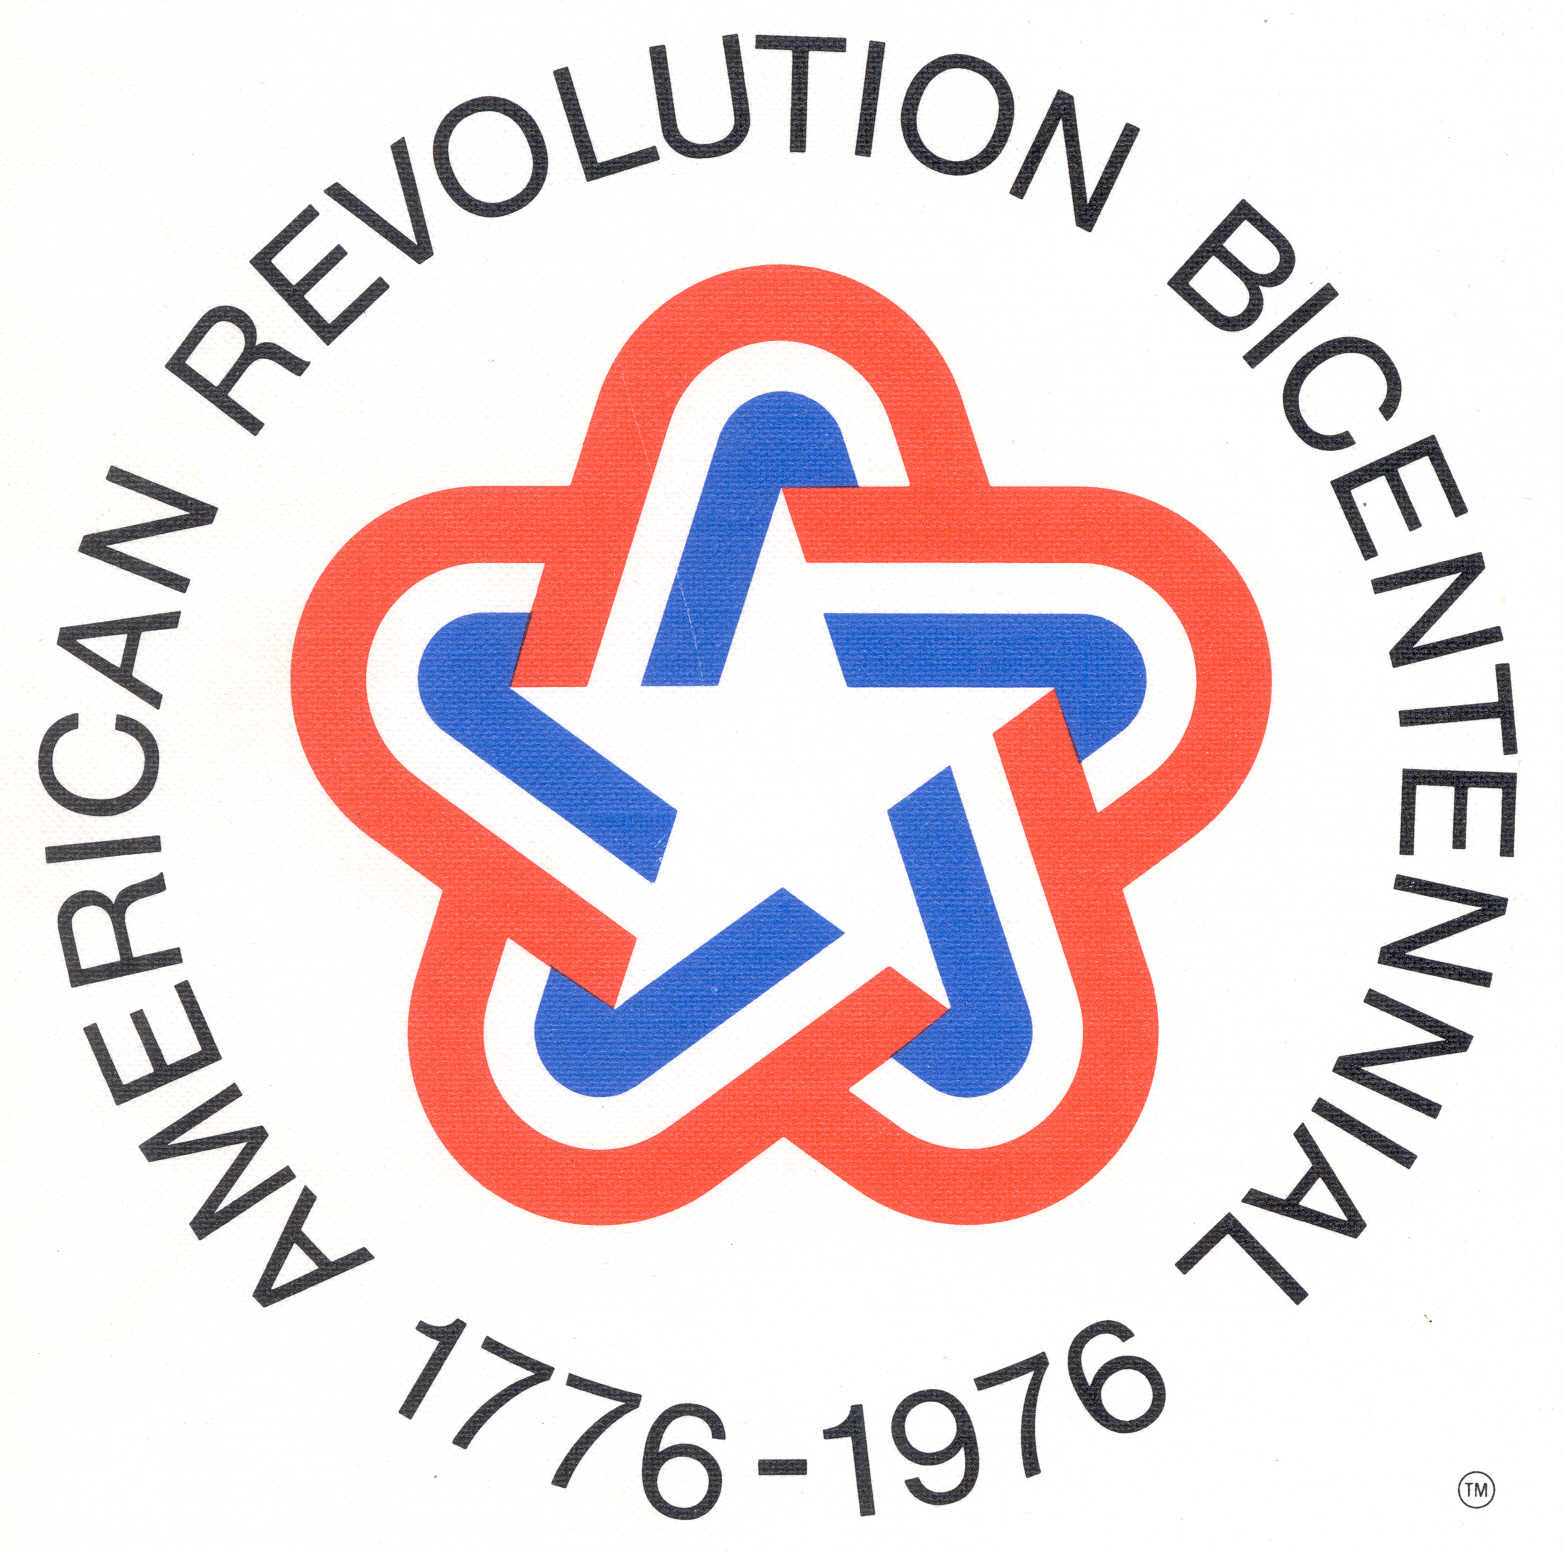 1970s-bicentennial.jpg